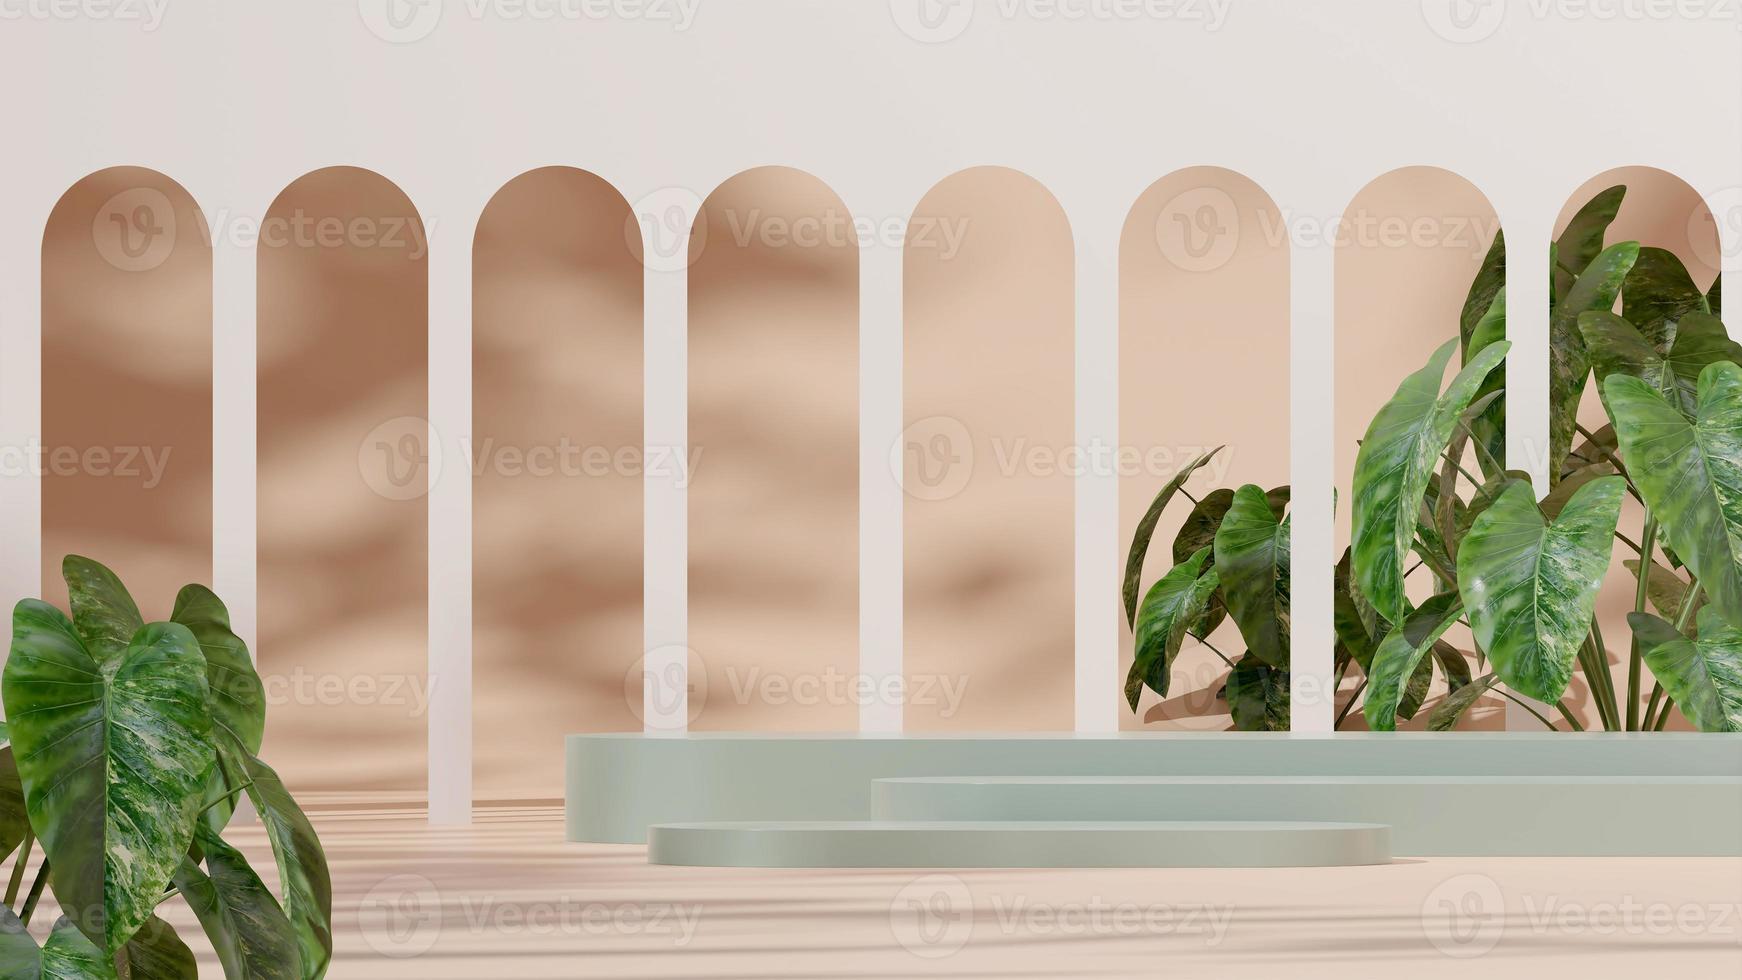 3d render sjabloon groene podiumtrap voor mockup in landschap met bogen en alocasia-planten foto